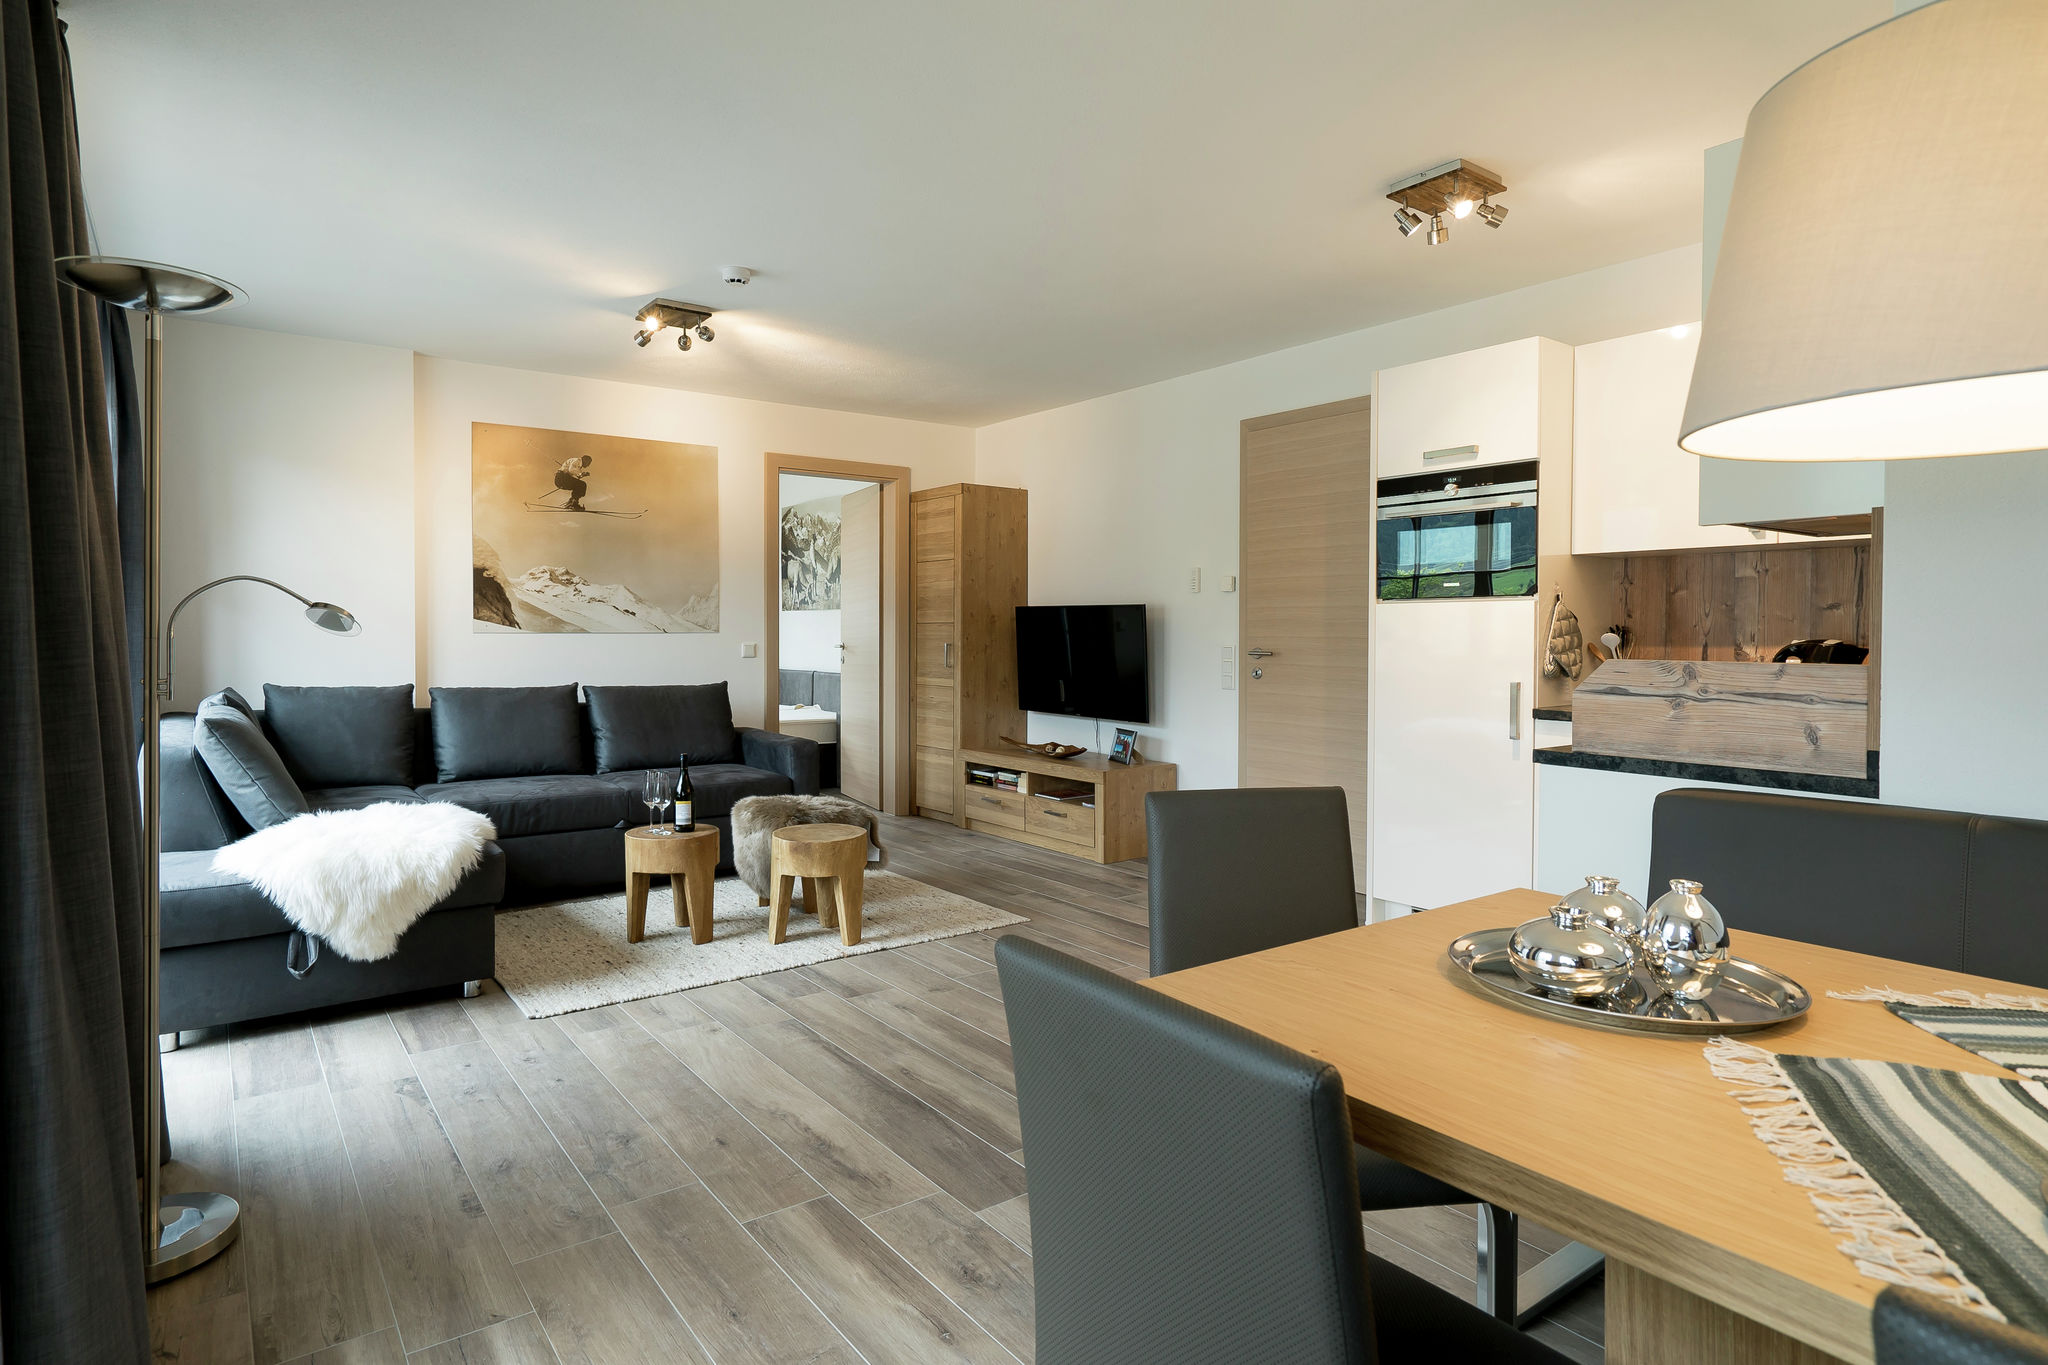 Luxe vakantieappartement nabij Zell am See met privésauna